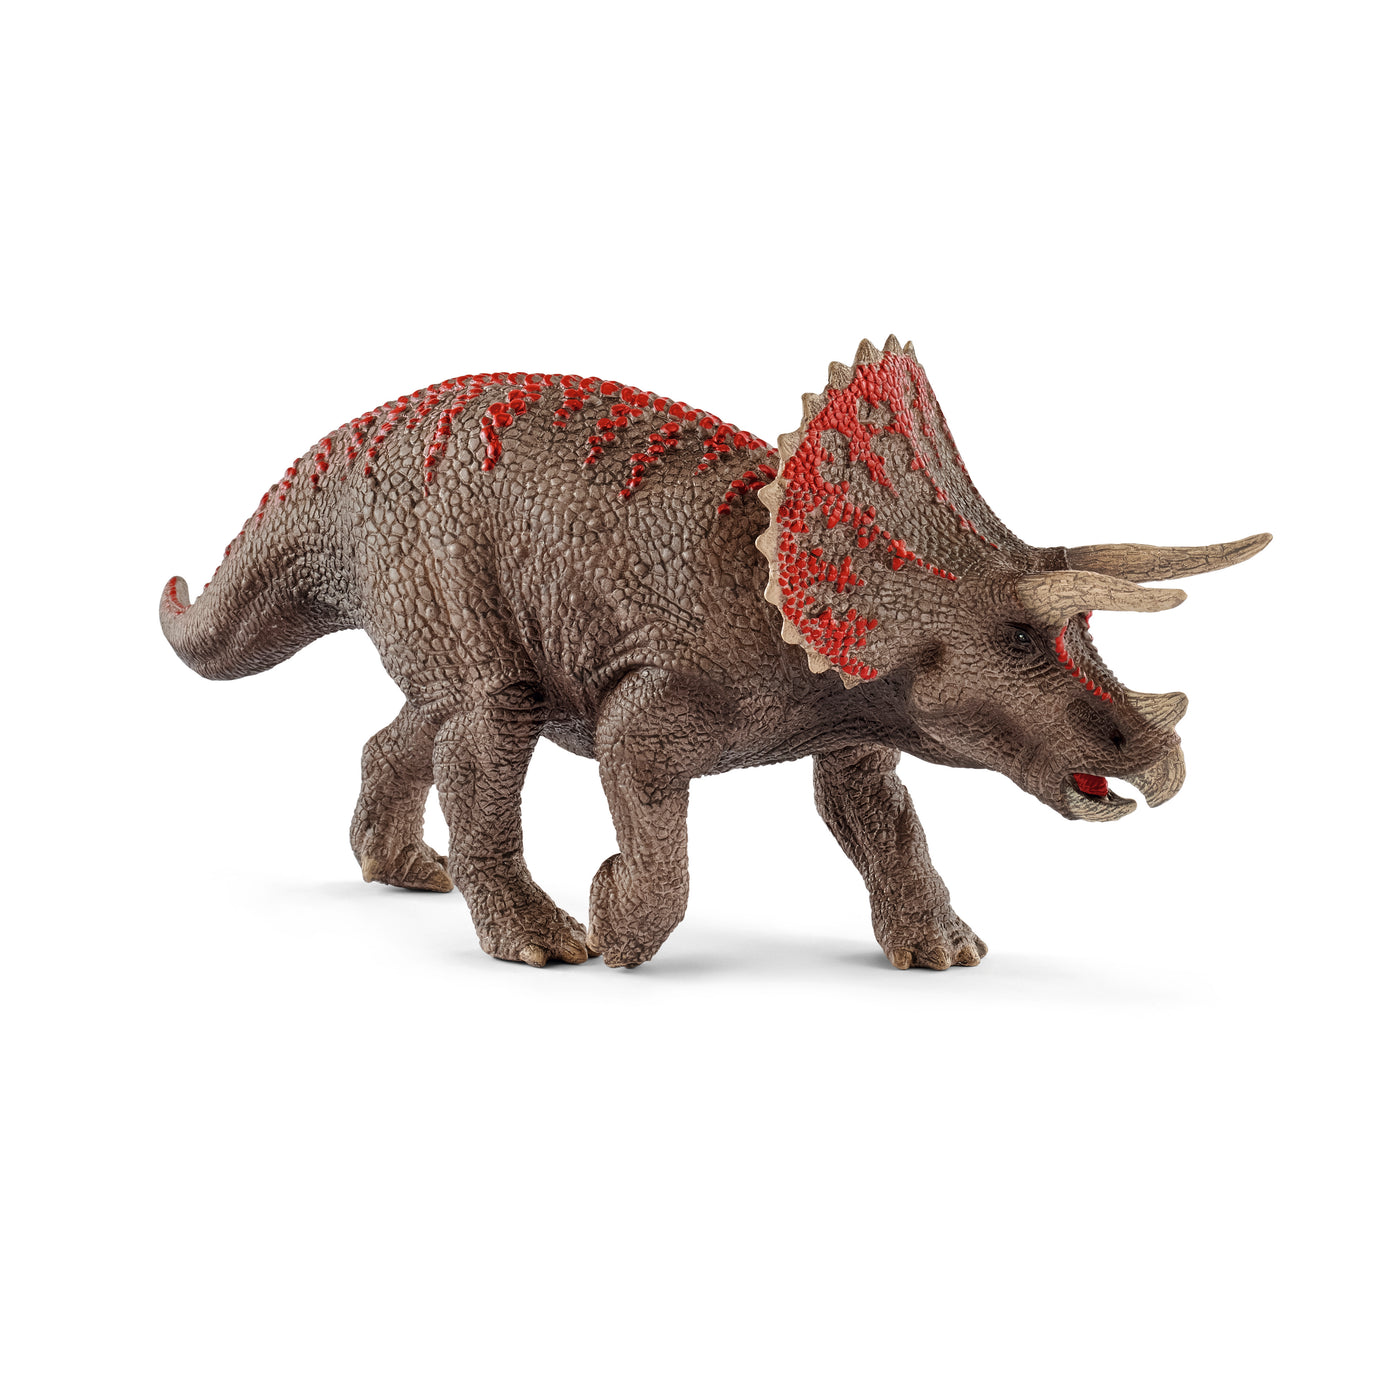 Dinosaur, Triceratops